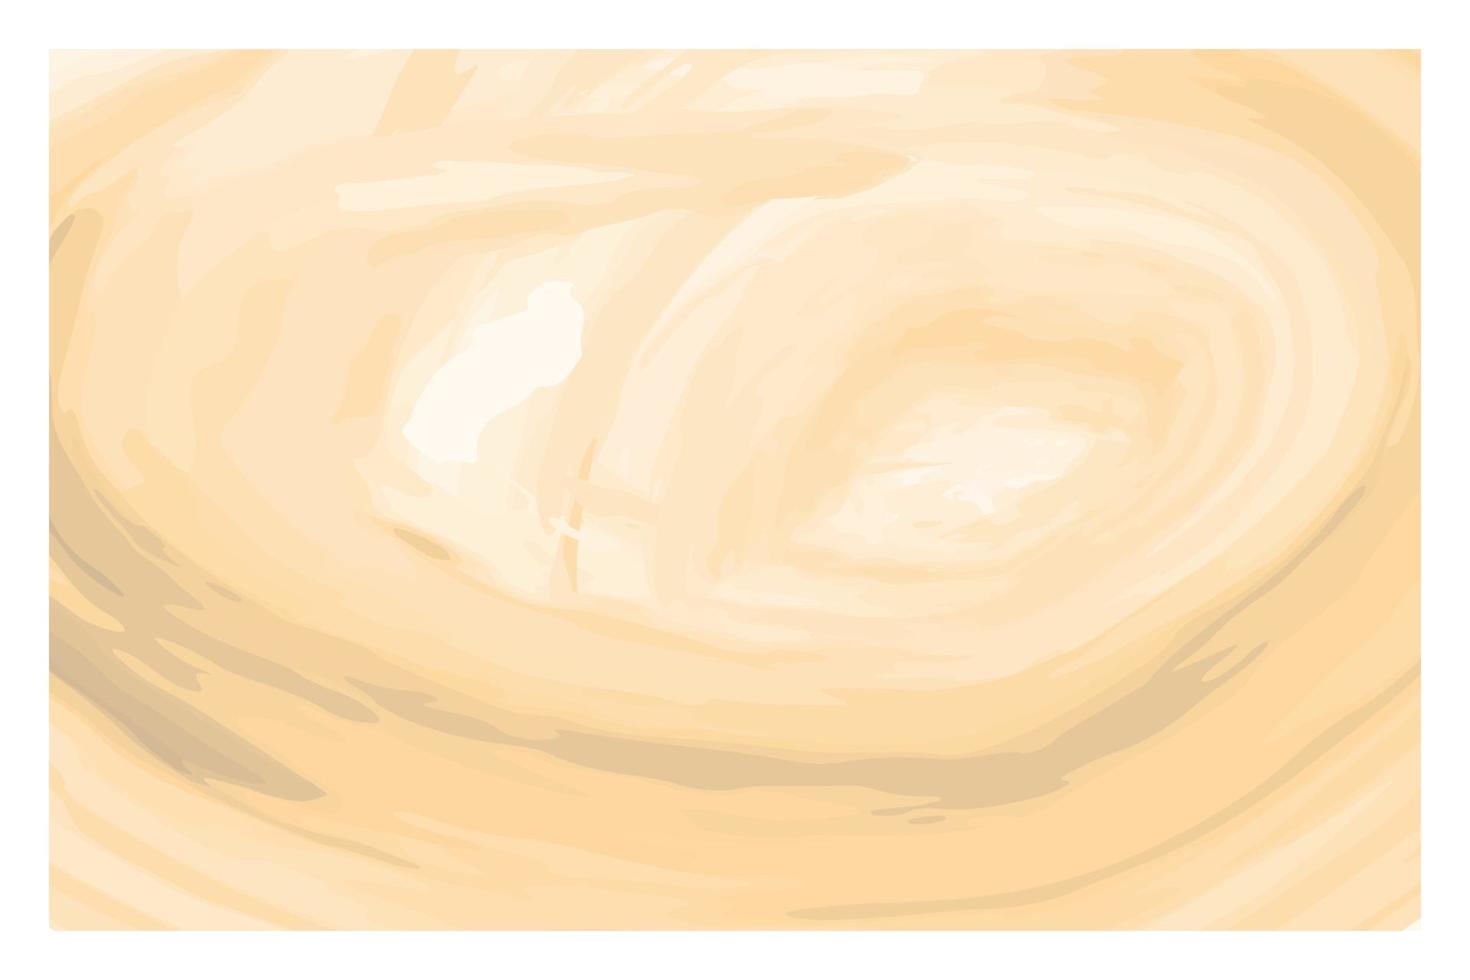 acquerello pastello disegno carta texture vettore banner luminoso, stampa. acquerello astratto bagnato disegnato a mano viola blu verde giallo colore carta colorante liquido per auguri, poster, design, carta da parati artistica